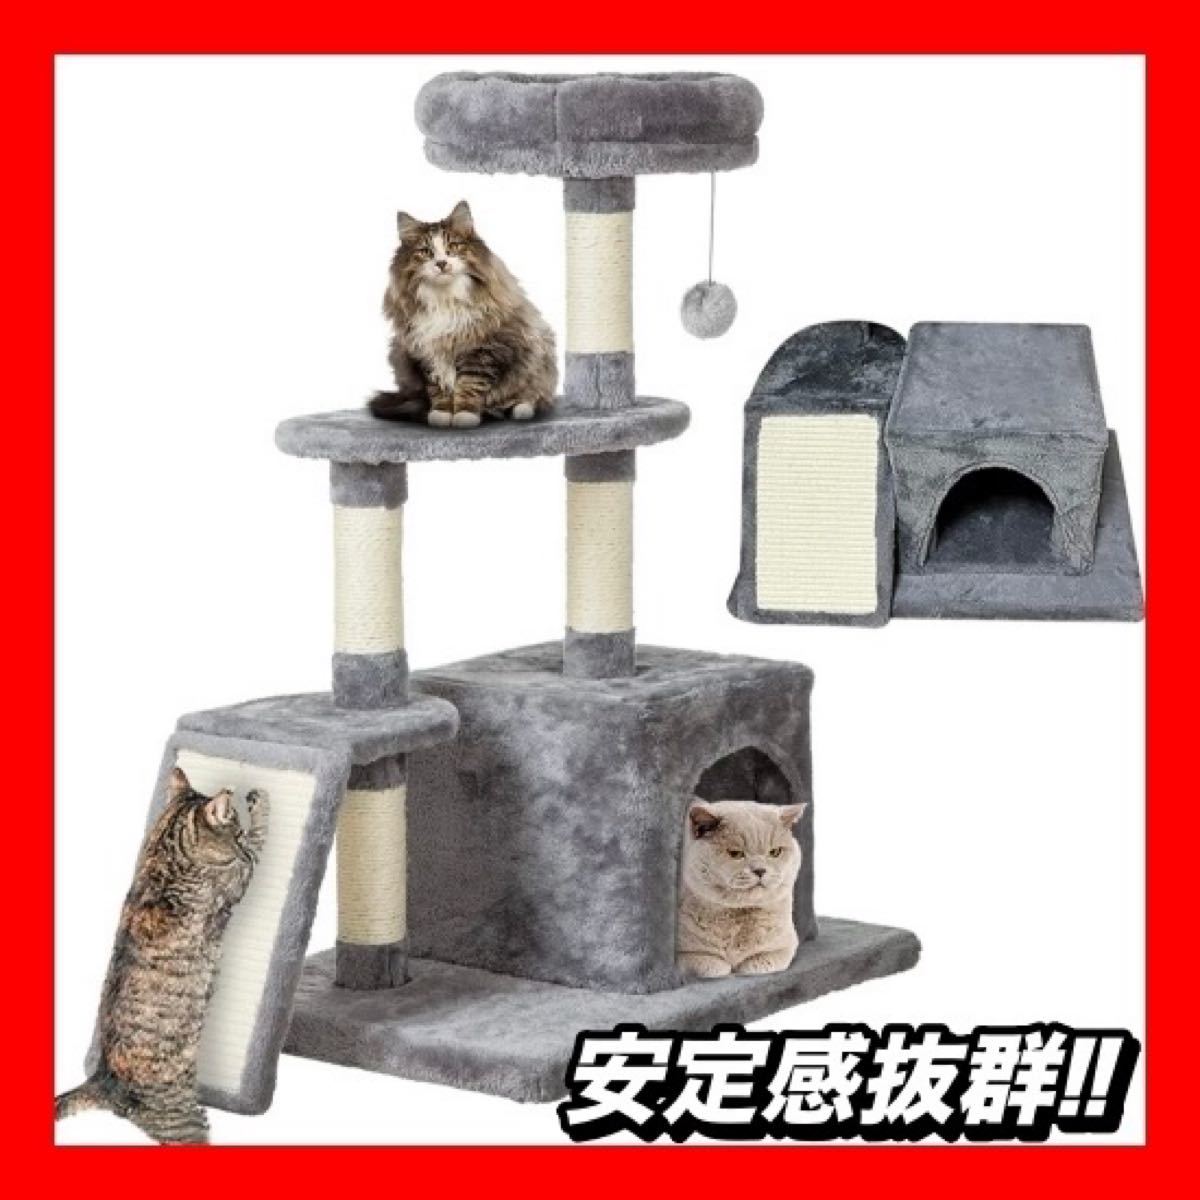 キャットタワー 猫タワー 据え置き型 人気 見晴らし台 爪とぎ 多機能 組立簡単 多頭飼い キャットハウス 麻紐